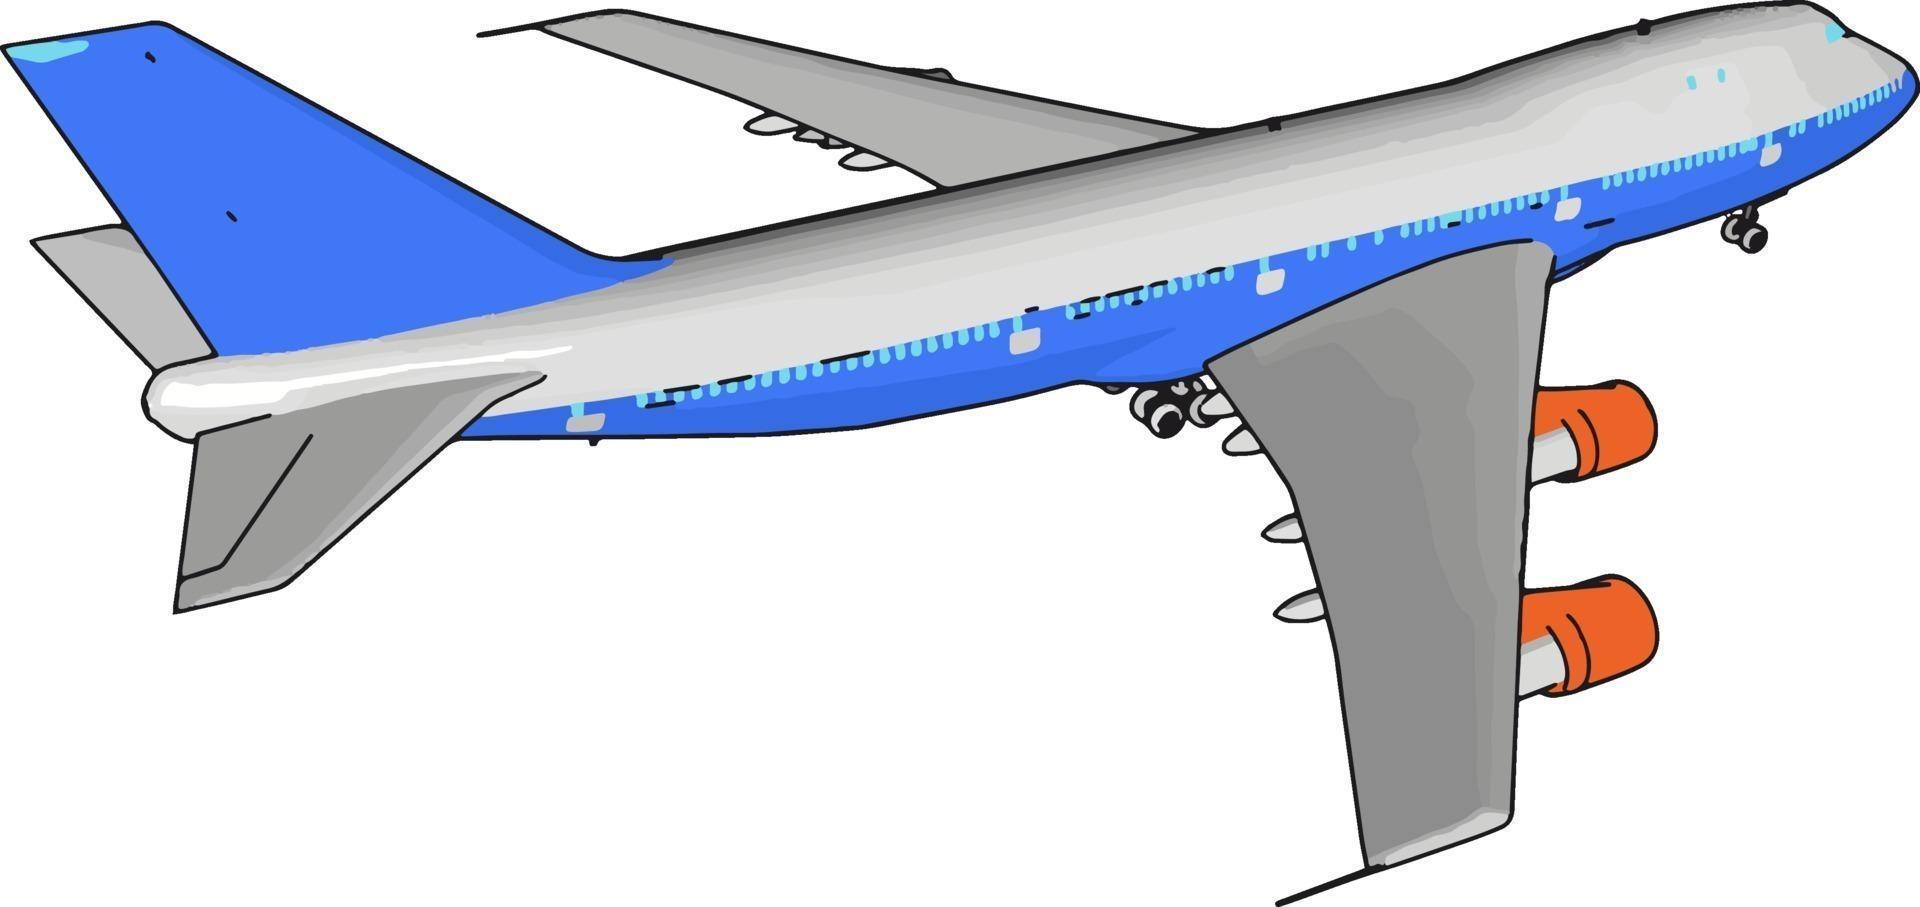 Blaues Passagierflugzeug, Illustration, Vektor auf weißem Hintergrund.